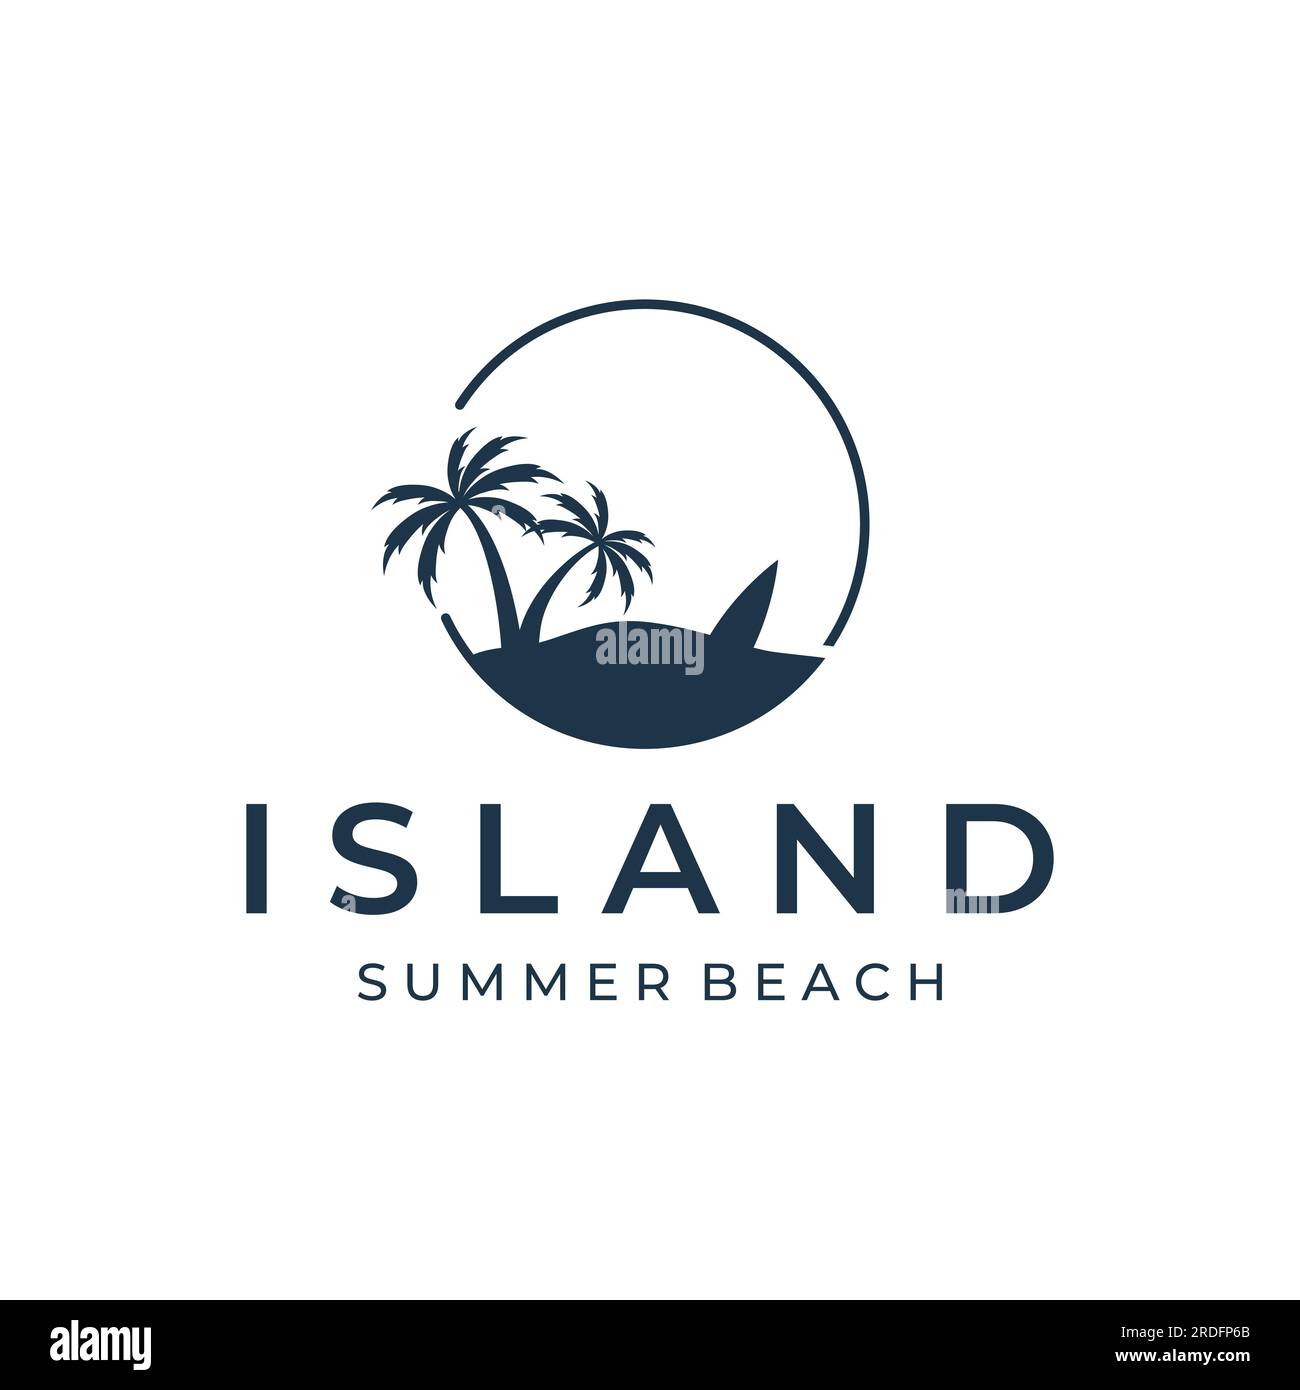 Sommerurlaub kreatives Logo am Strand mit Symbolen von Wellen, Palmen und Surfbrettern im Retro-Stil. Emblem, Label, Poster, Abzeichen. Stock Vektor